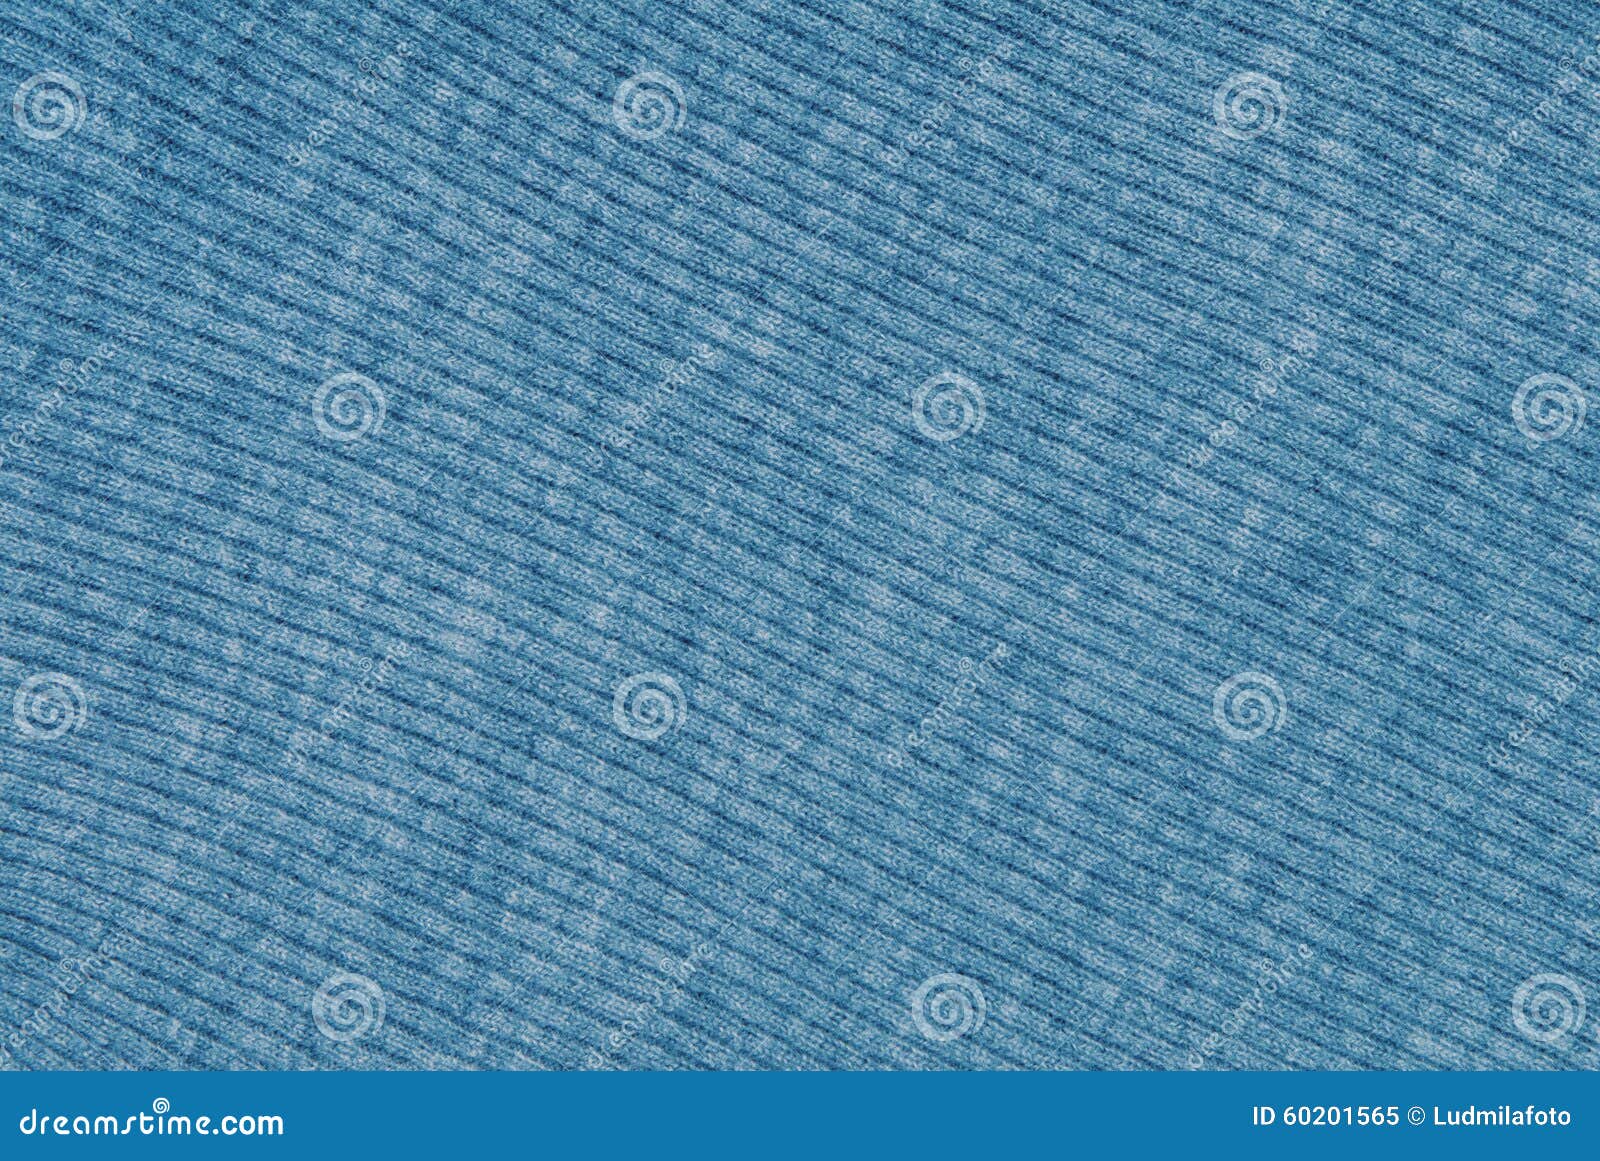 纺织品. 它是蓝色被编织的织品